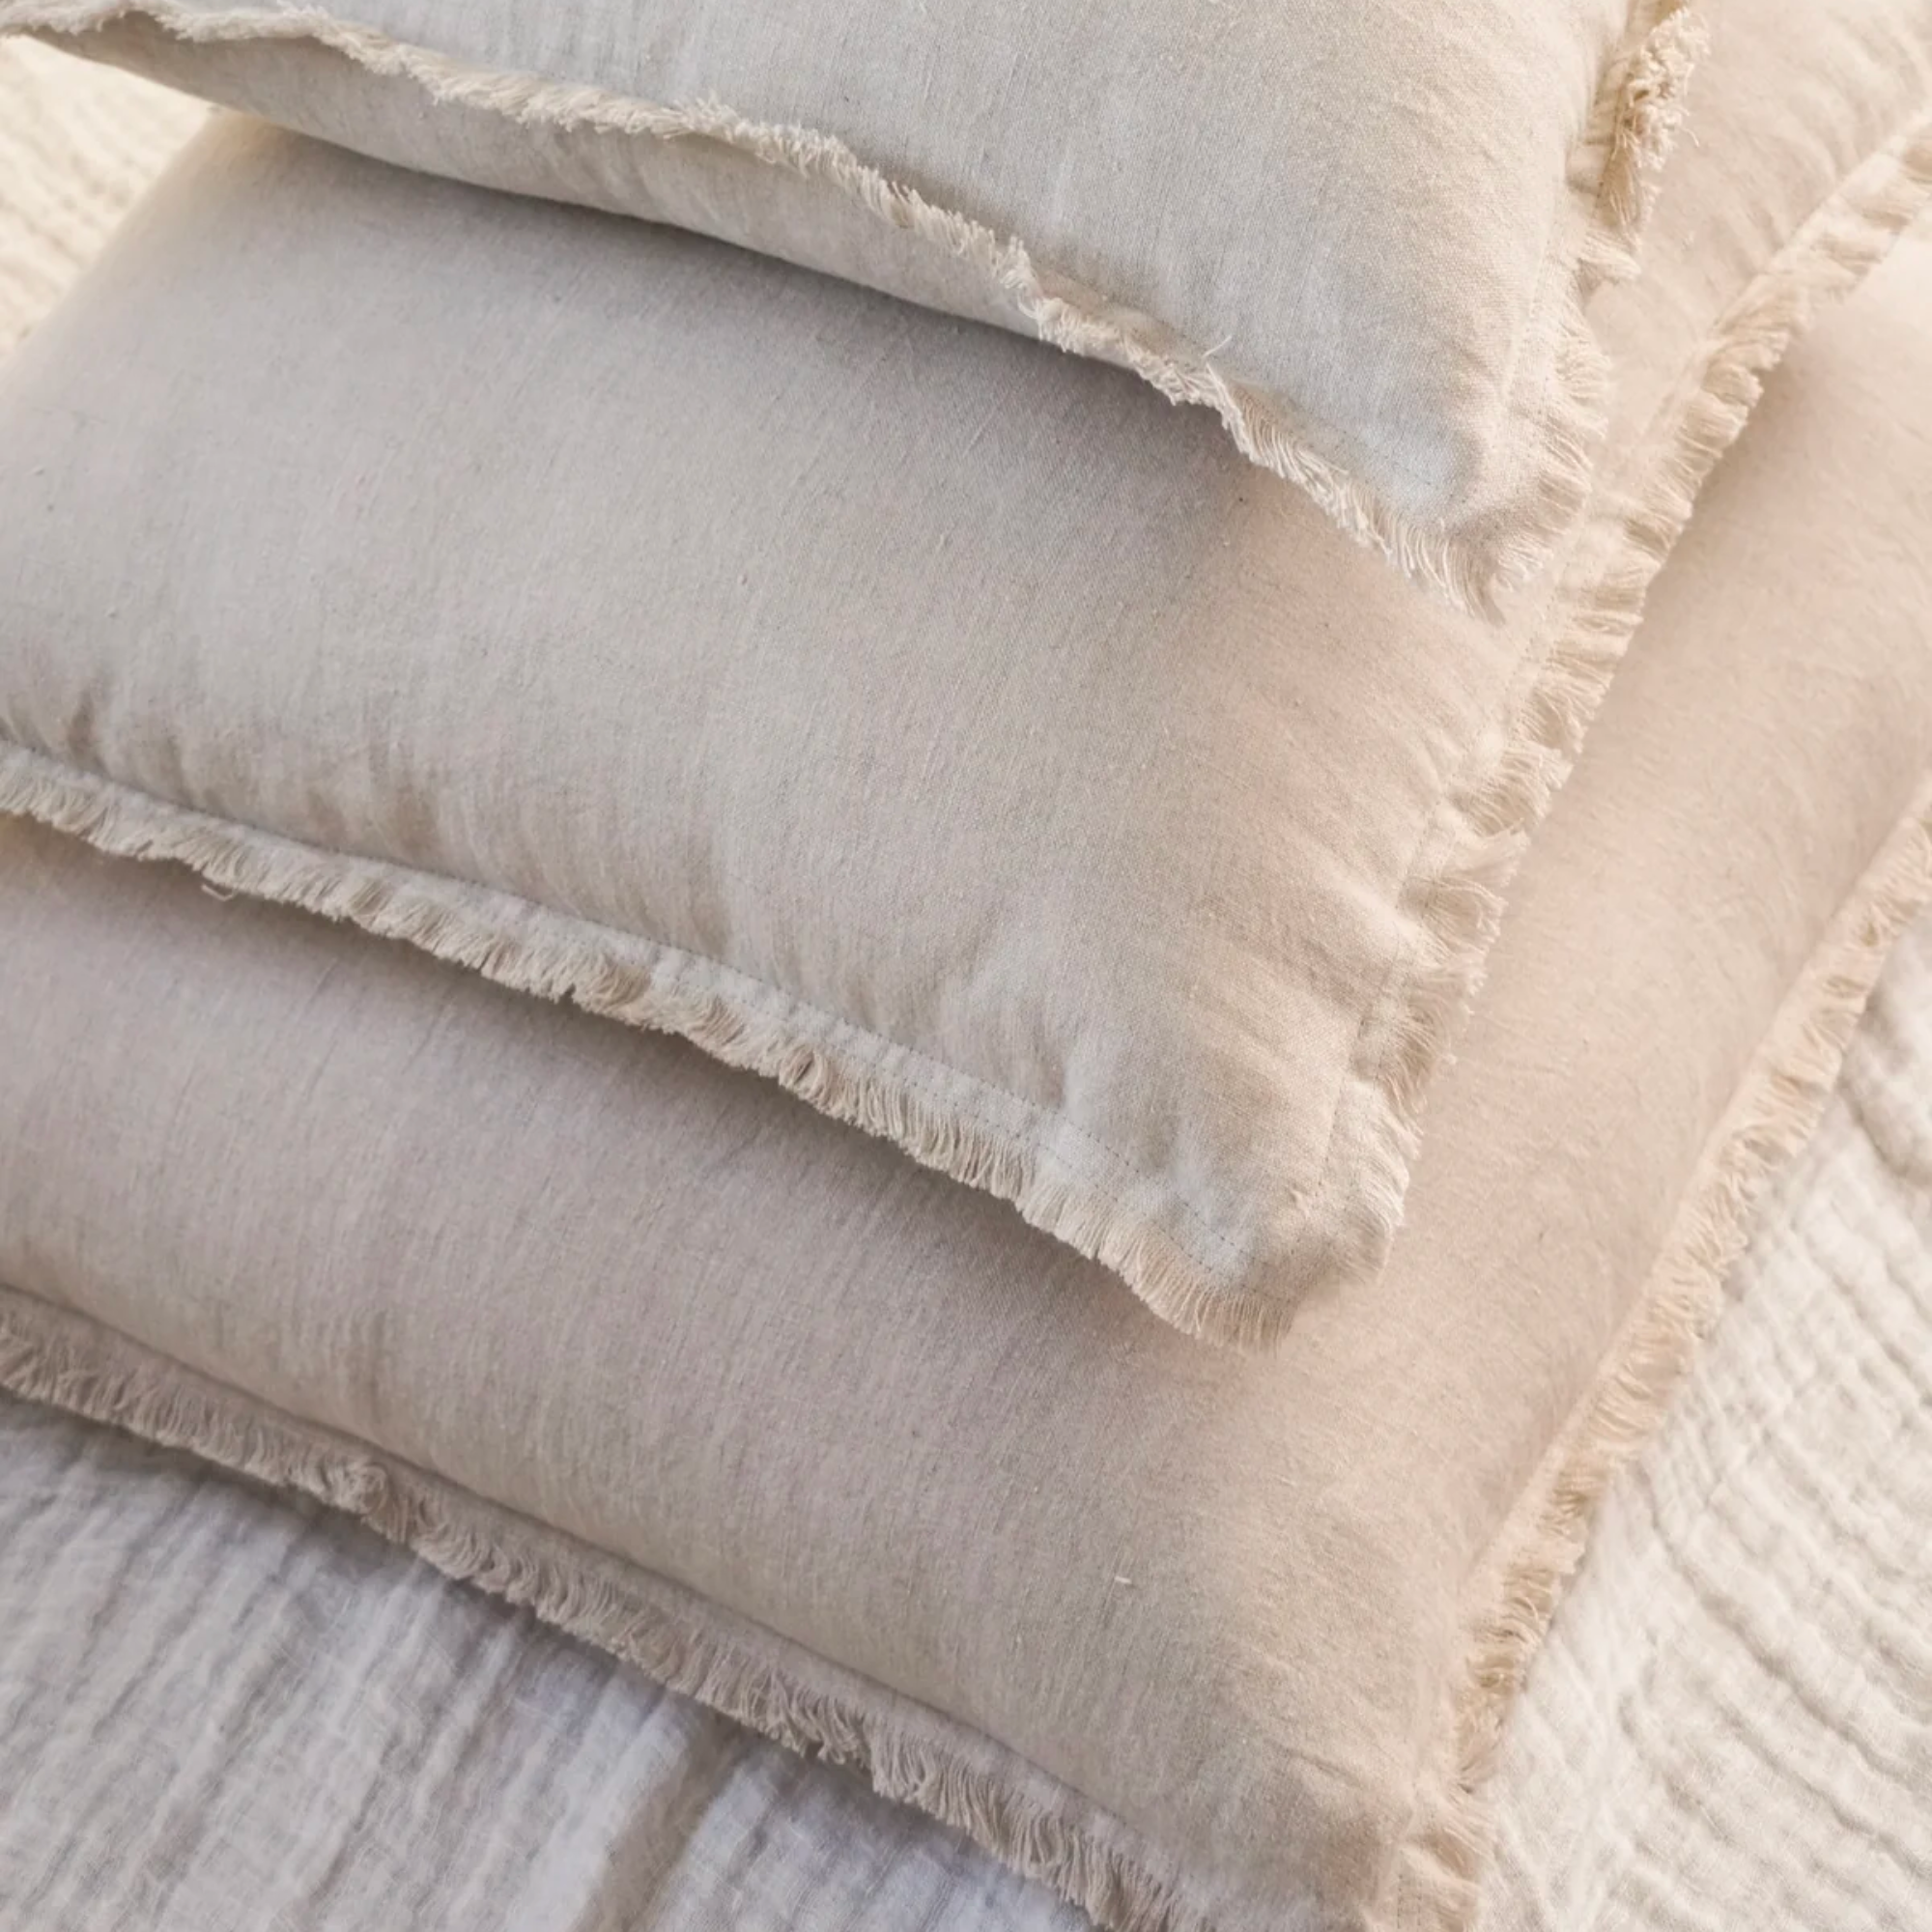 Bailey Linen Pillow - Beige